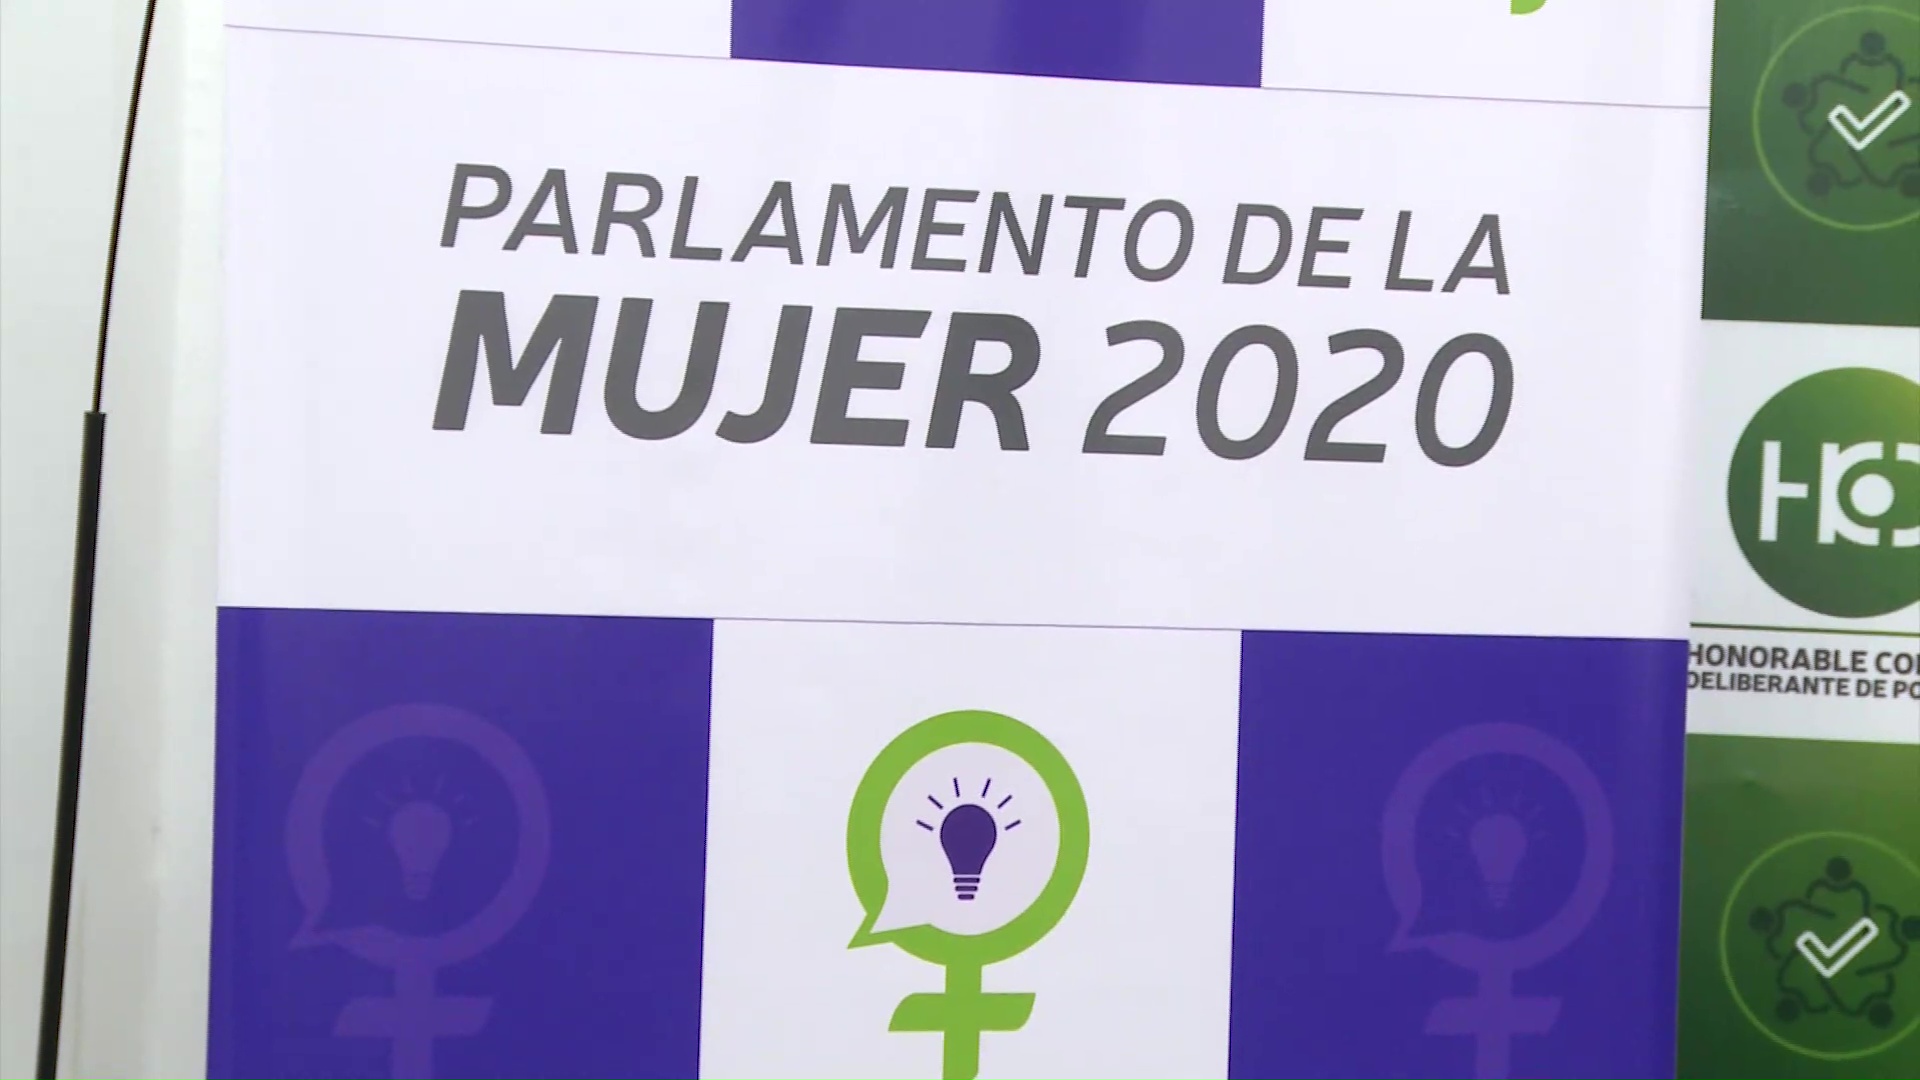 Parlamento de la Mujer 2020: las inscripciones iniciaron este lunes